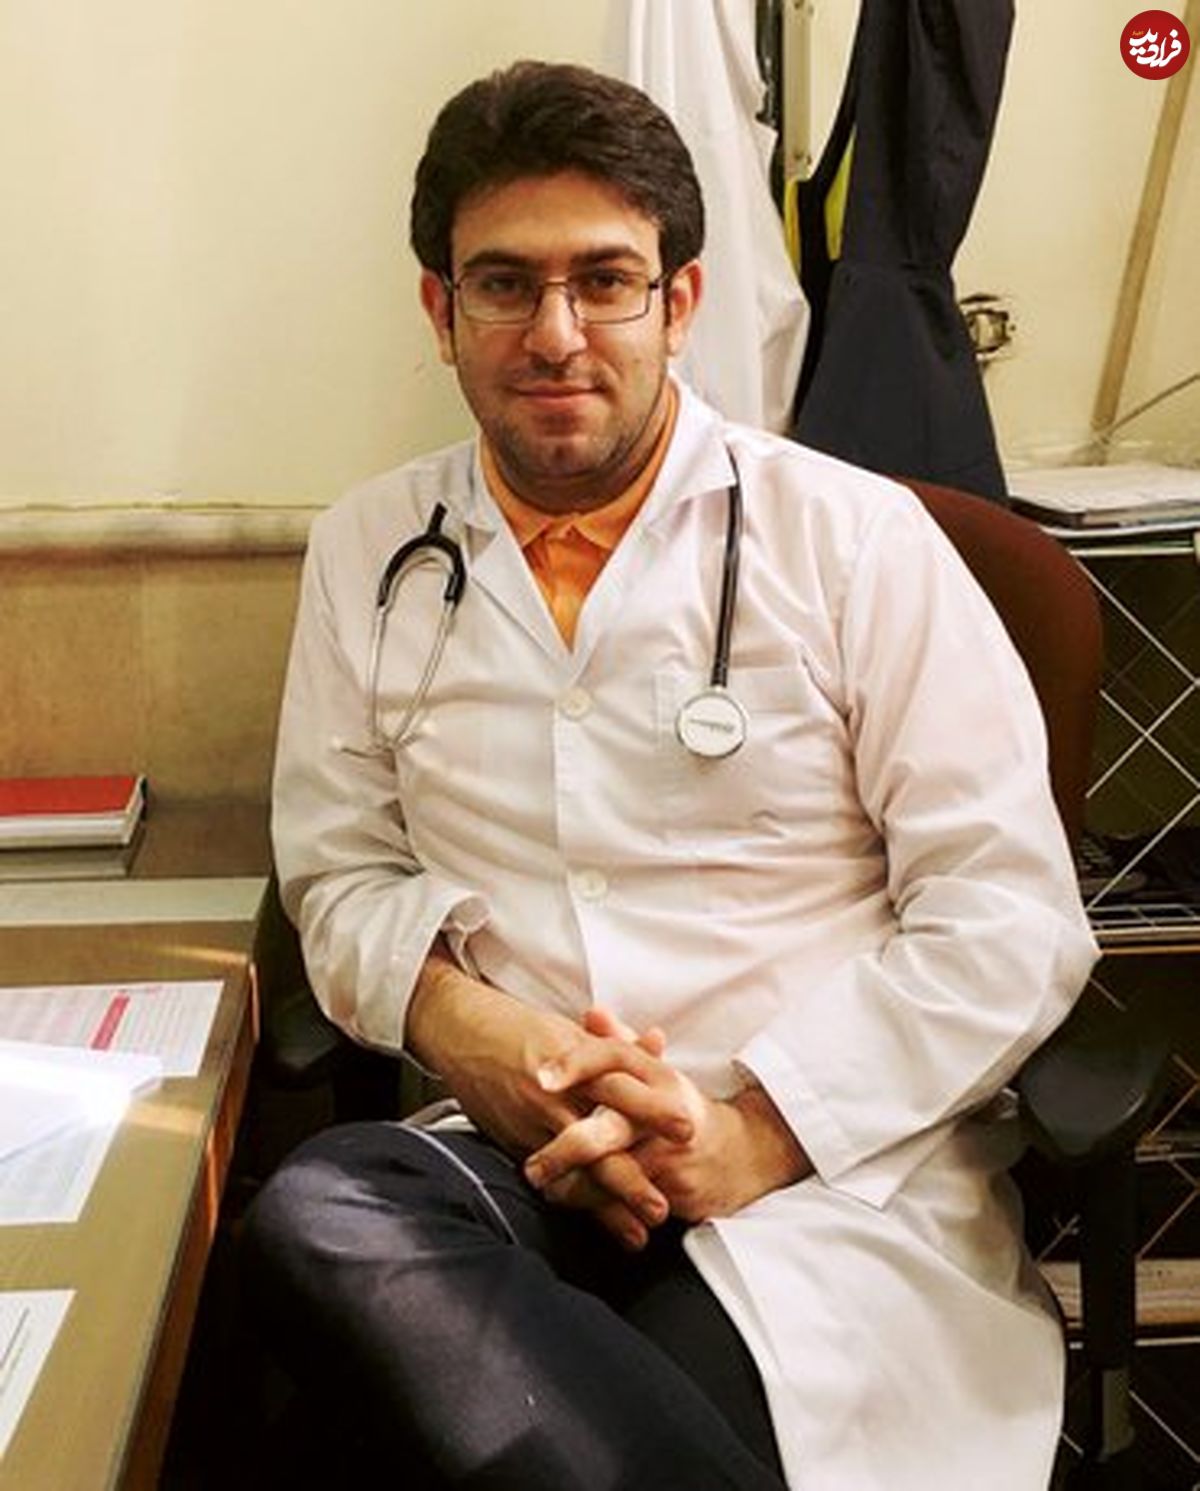 فاجعه در خانه پزشک سرشناس تبریزی